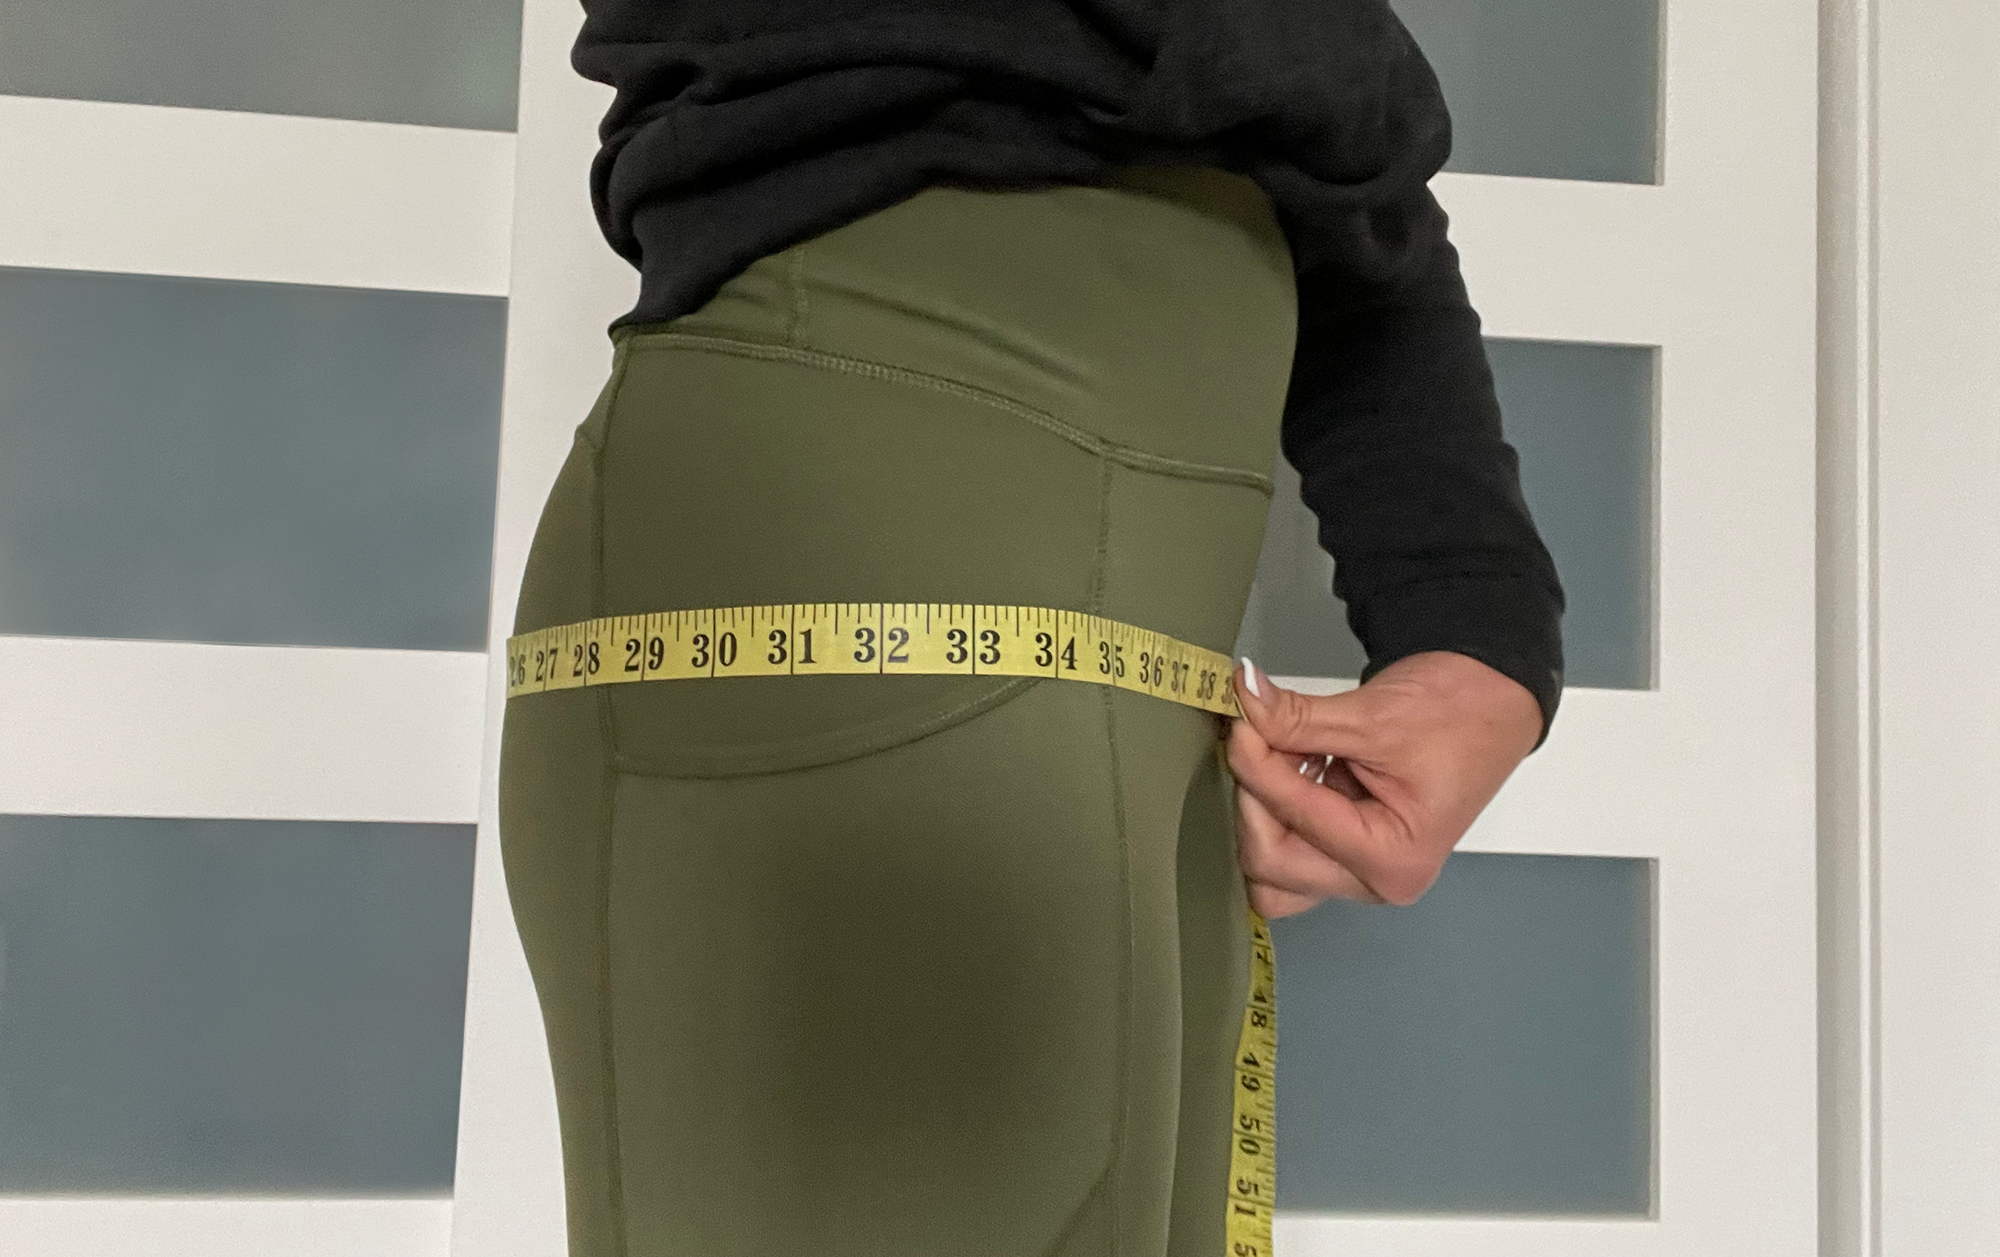 Measuring hips